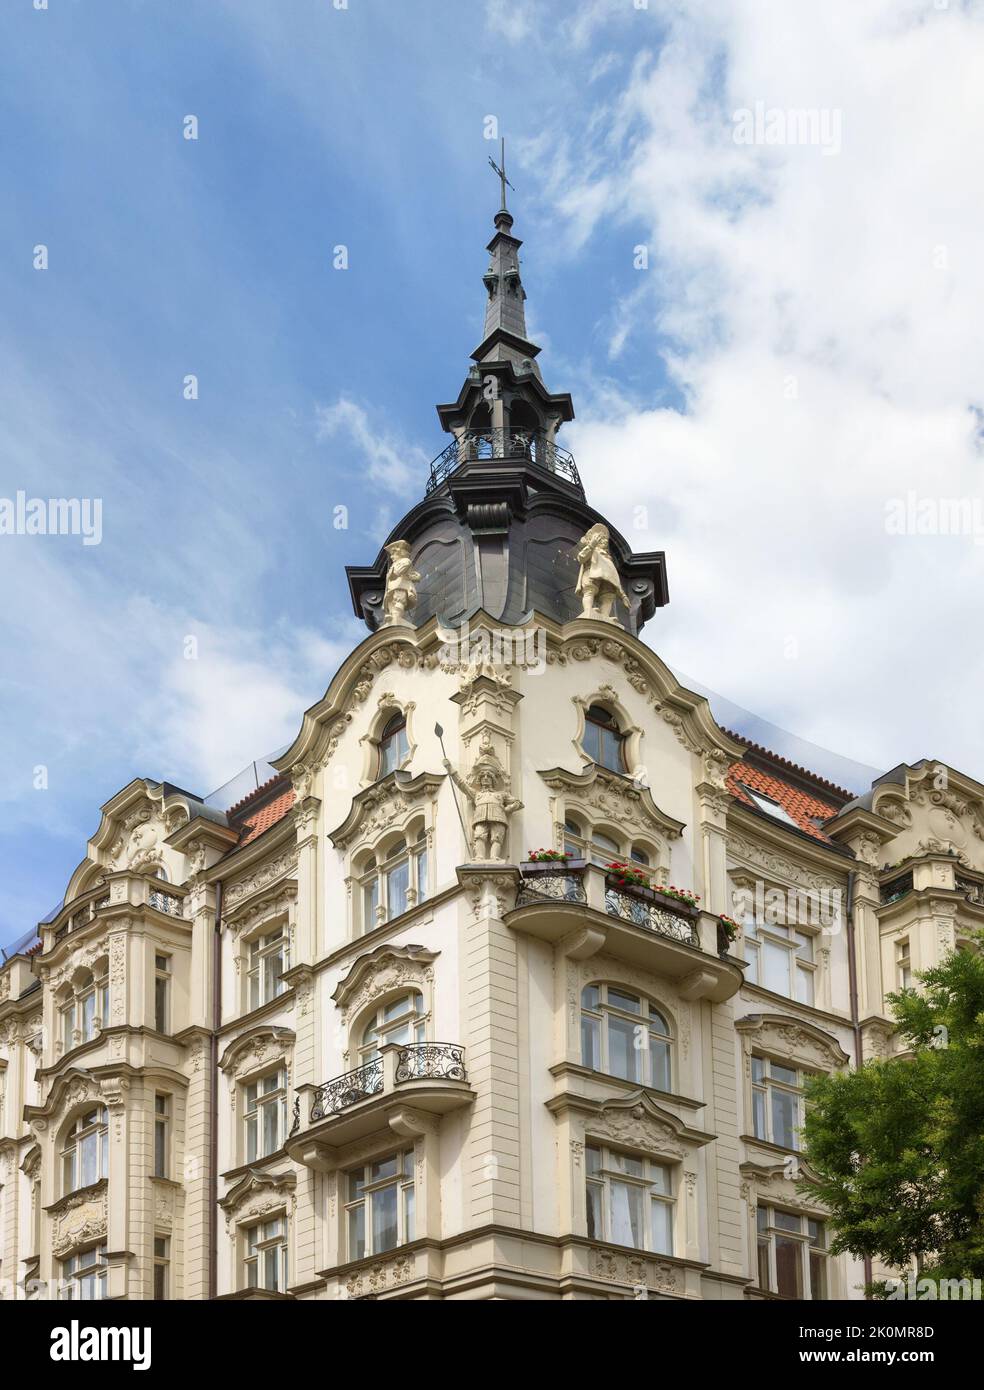 Belle maison sur la rue Siroka. Prague, République tchèque. Banque D'Images